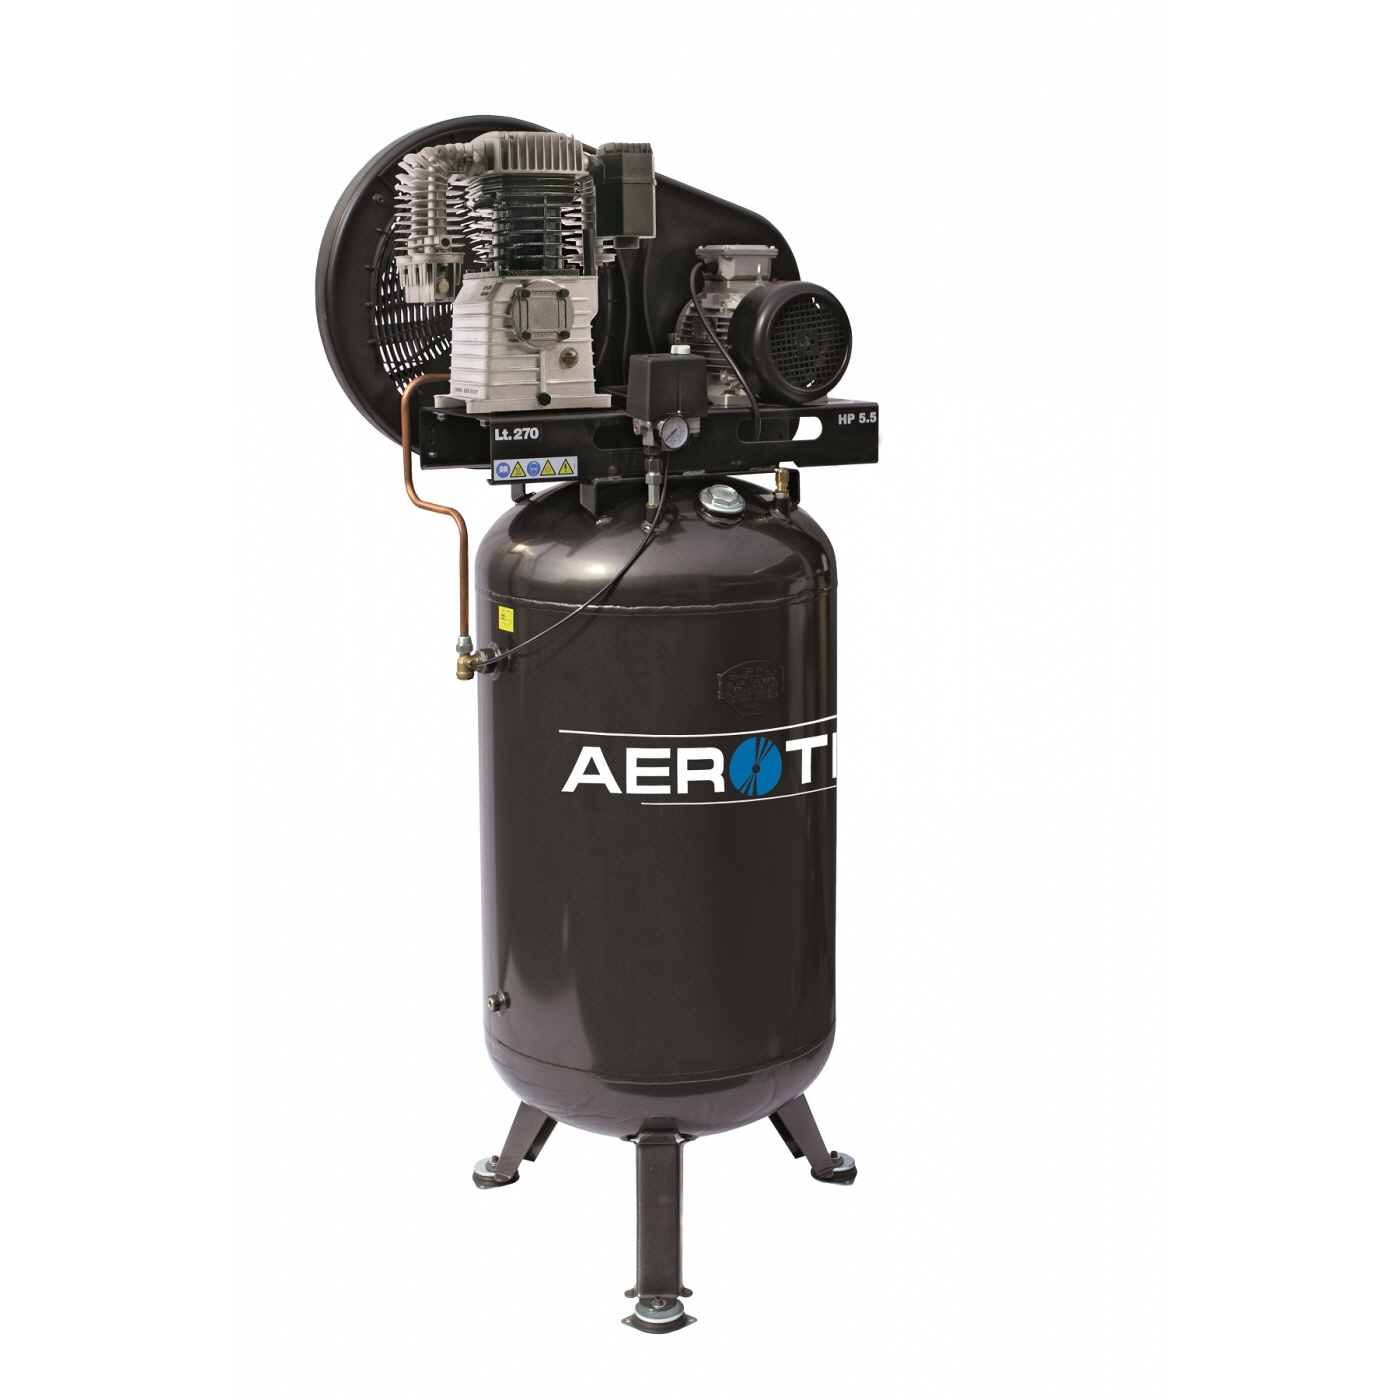 AEROTEC Kolbenkompressor N59-270 PRO stehend - 400 Volt 15 bar AD2000 Stationär